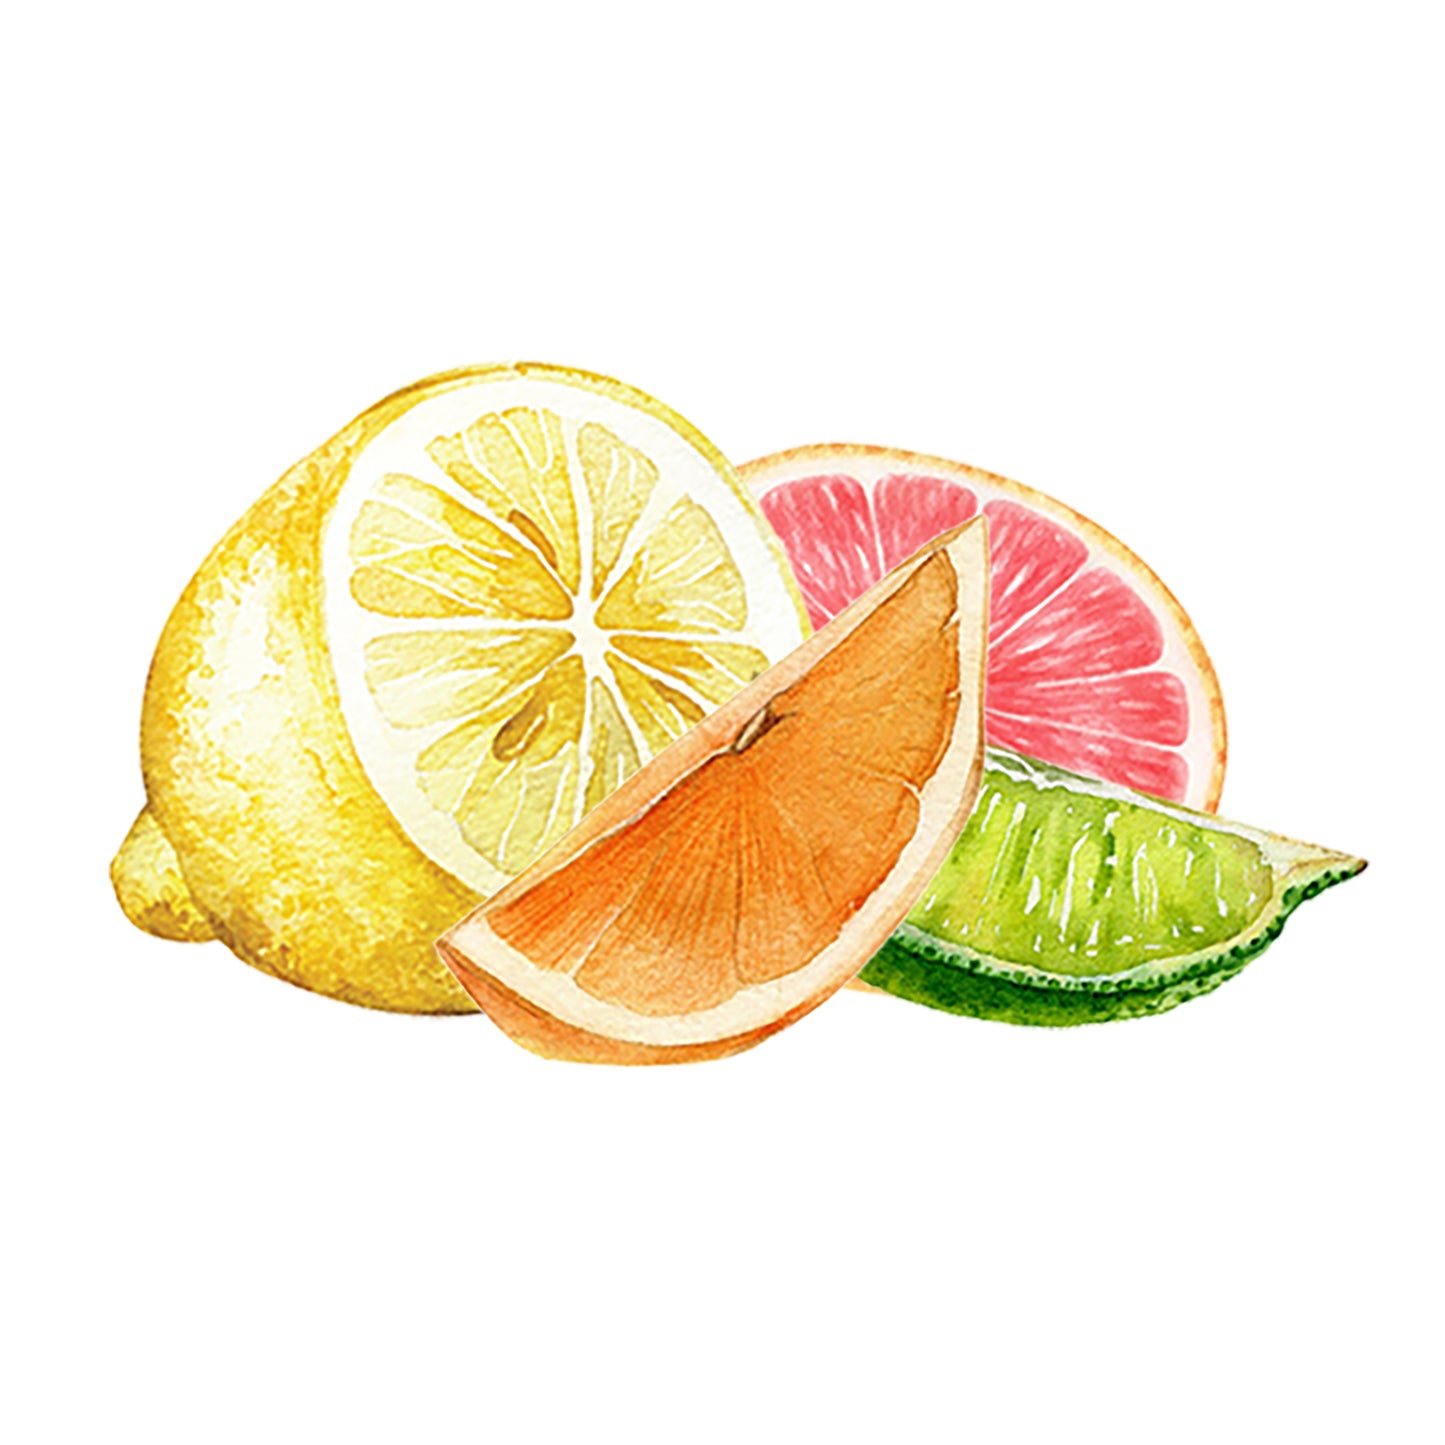 Lemon, Lime, Orange, Grapegruit Essential Oil Blend